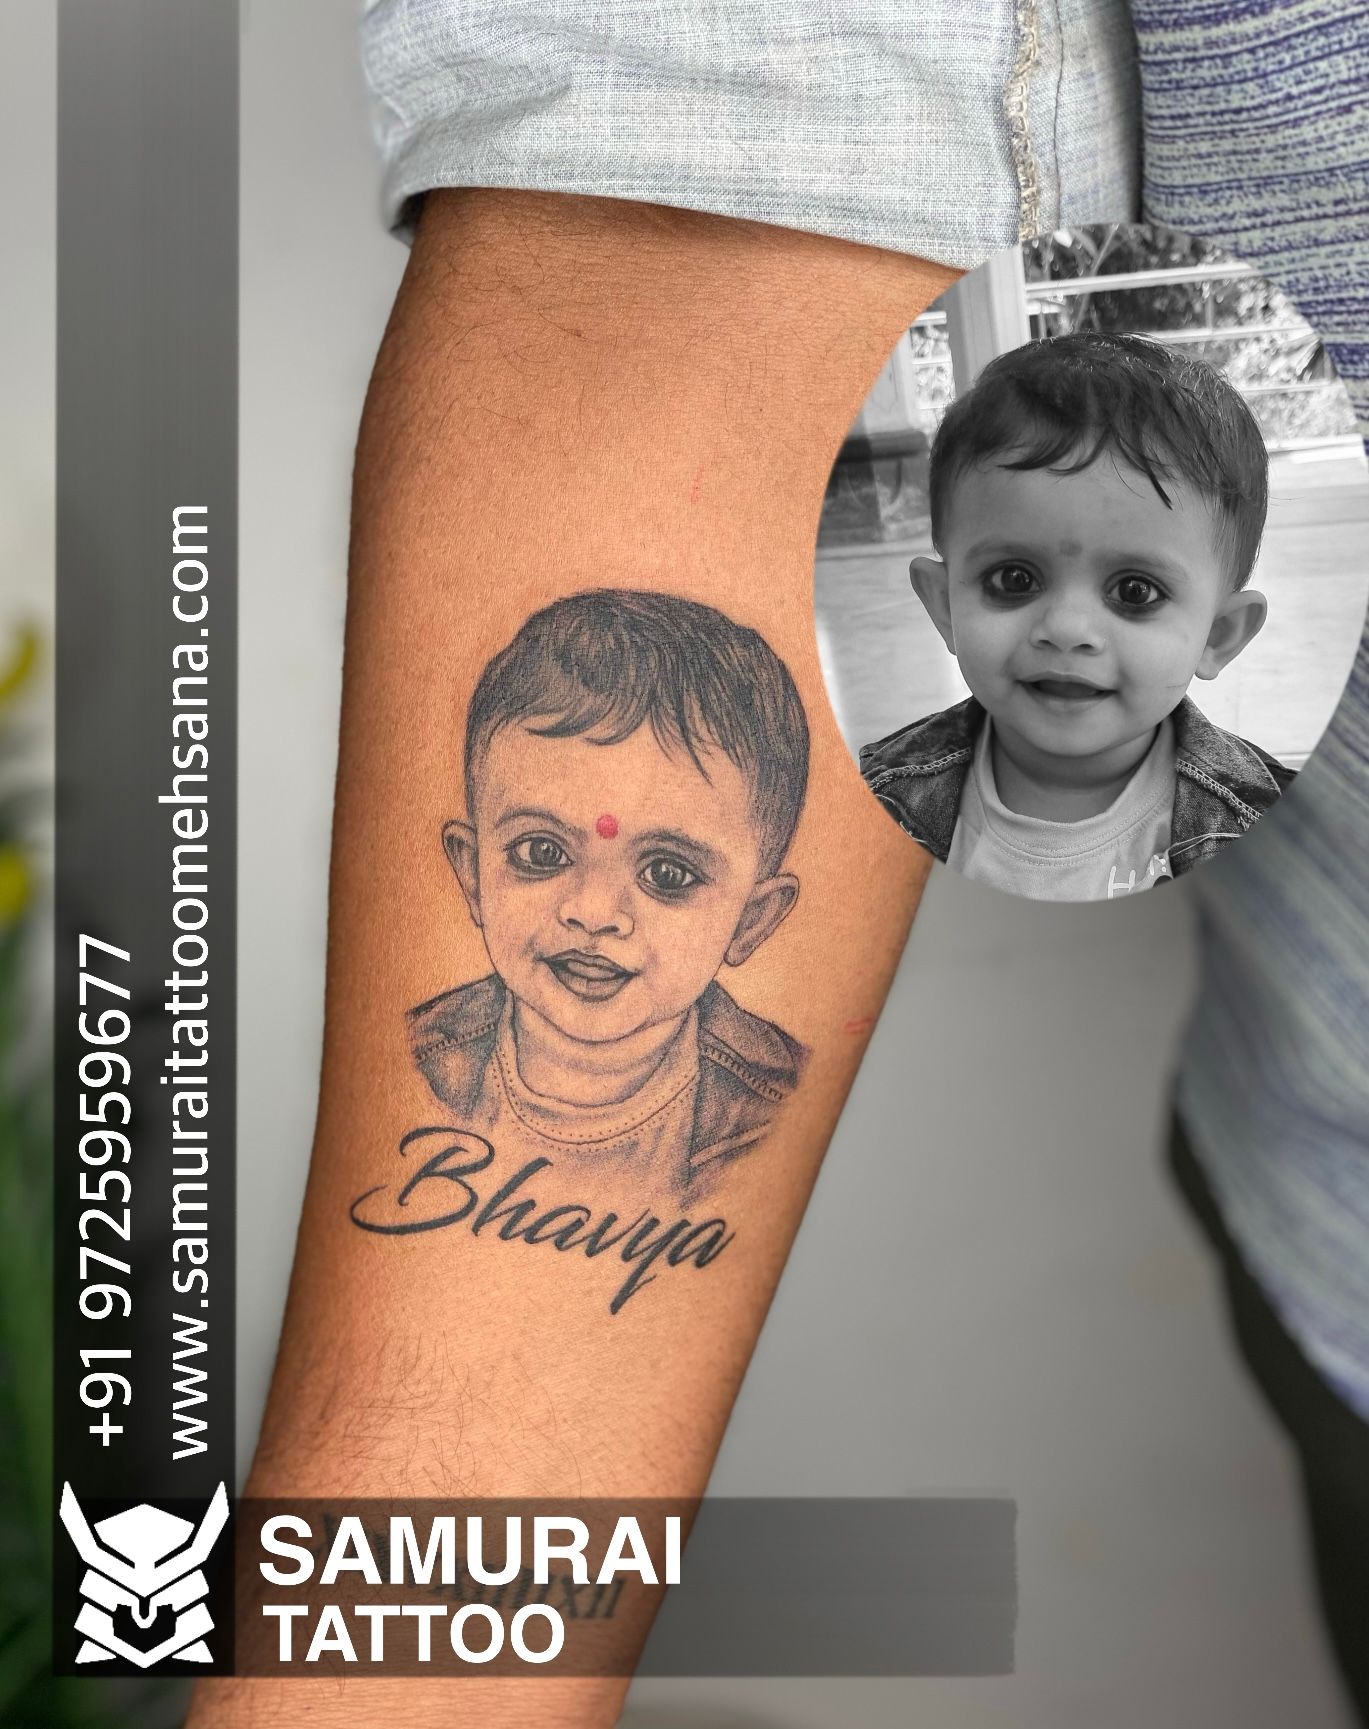 Tattoo uploaded by Vipul Chaudhary • Bhagy name tattoo |Bhagy name tattoo  ideas |Bhagy tattoo |Bhagy tattoo ideas • Tattoodo